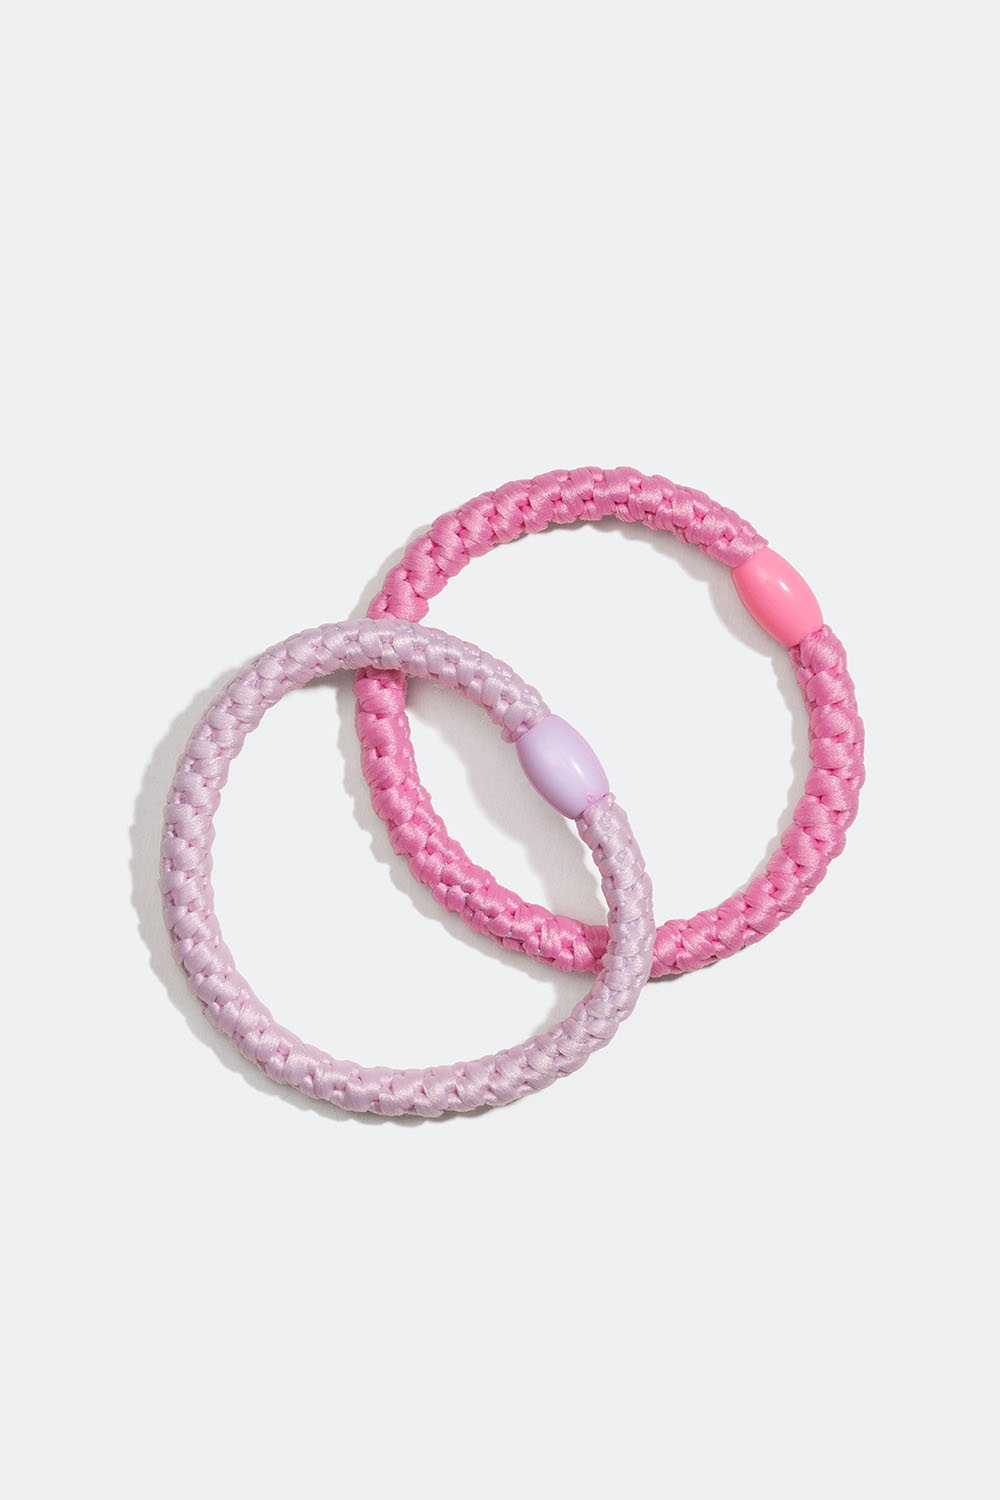 Små, flettede hårstrikker i rosa, 2-pakning i gruppen Barn / Hårtilbehør til barn / Hårstrikk til barn hos Glitter (403000065400)